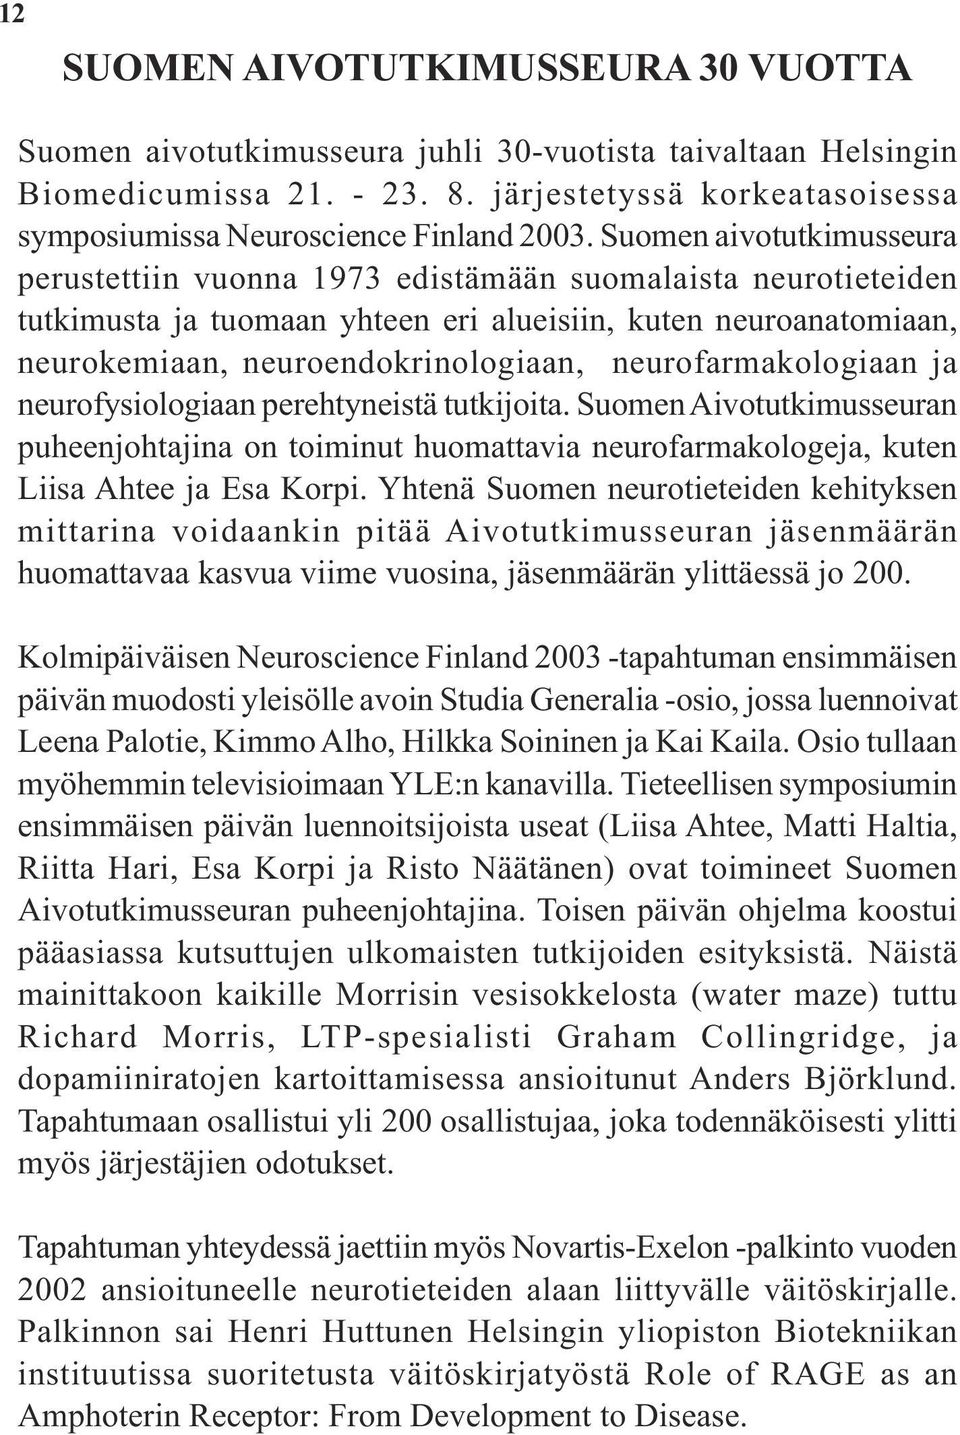 Suomen aivotutkimusseura perustettiin vuonna 1973 edistämään suomalaista neurotieteiden tutkimusta ja tuomaan yhteen eri alueisiin, kuten neuroanatomiaan, neurokemiaan, neuroendokrinologiaan,